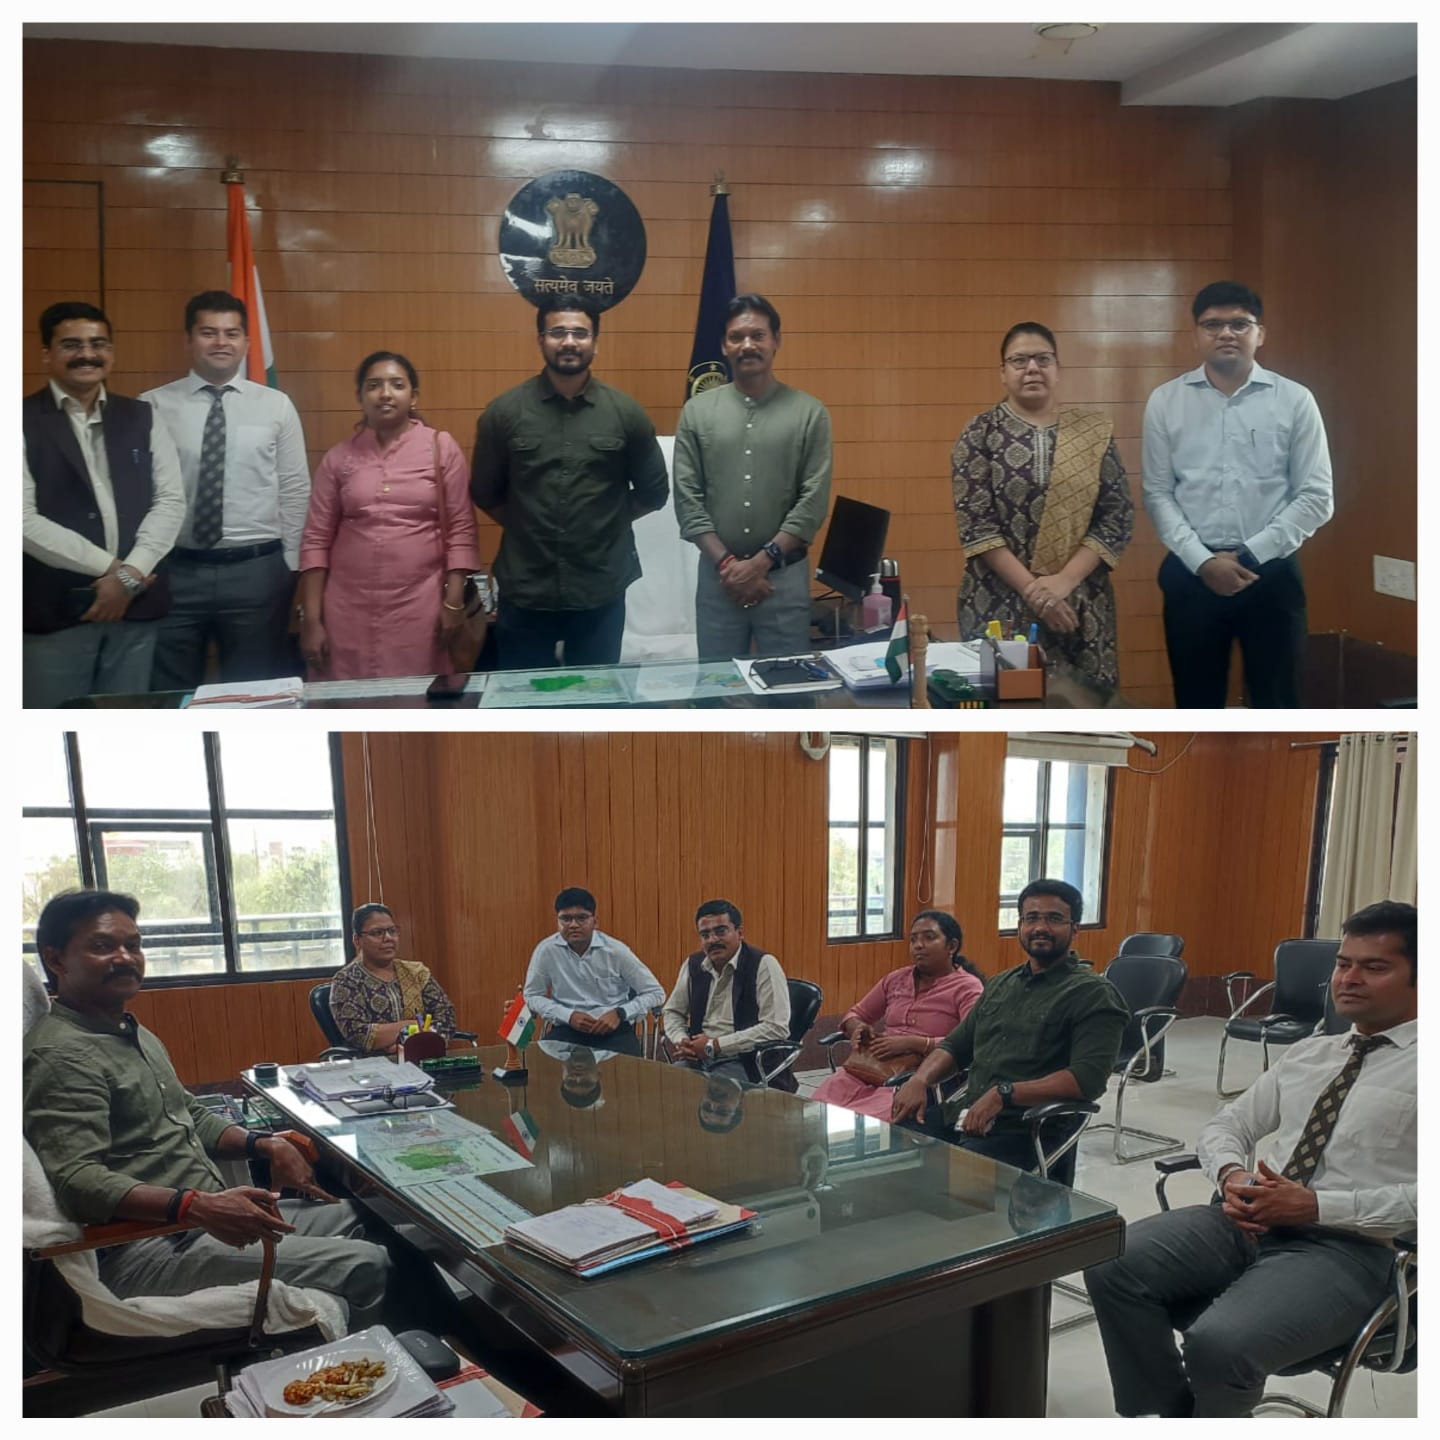 जिले में पहुंचा प्रशिक्षु आईएएस का अध्ययन दल,कलेक्टर के.एल.चौहान से की सौजन्य मुलाकात